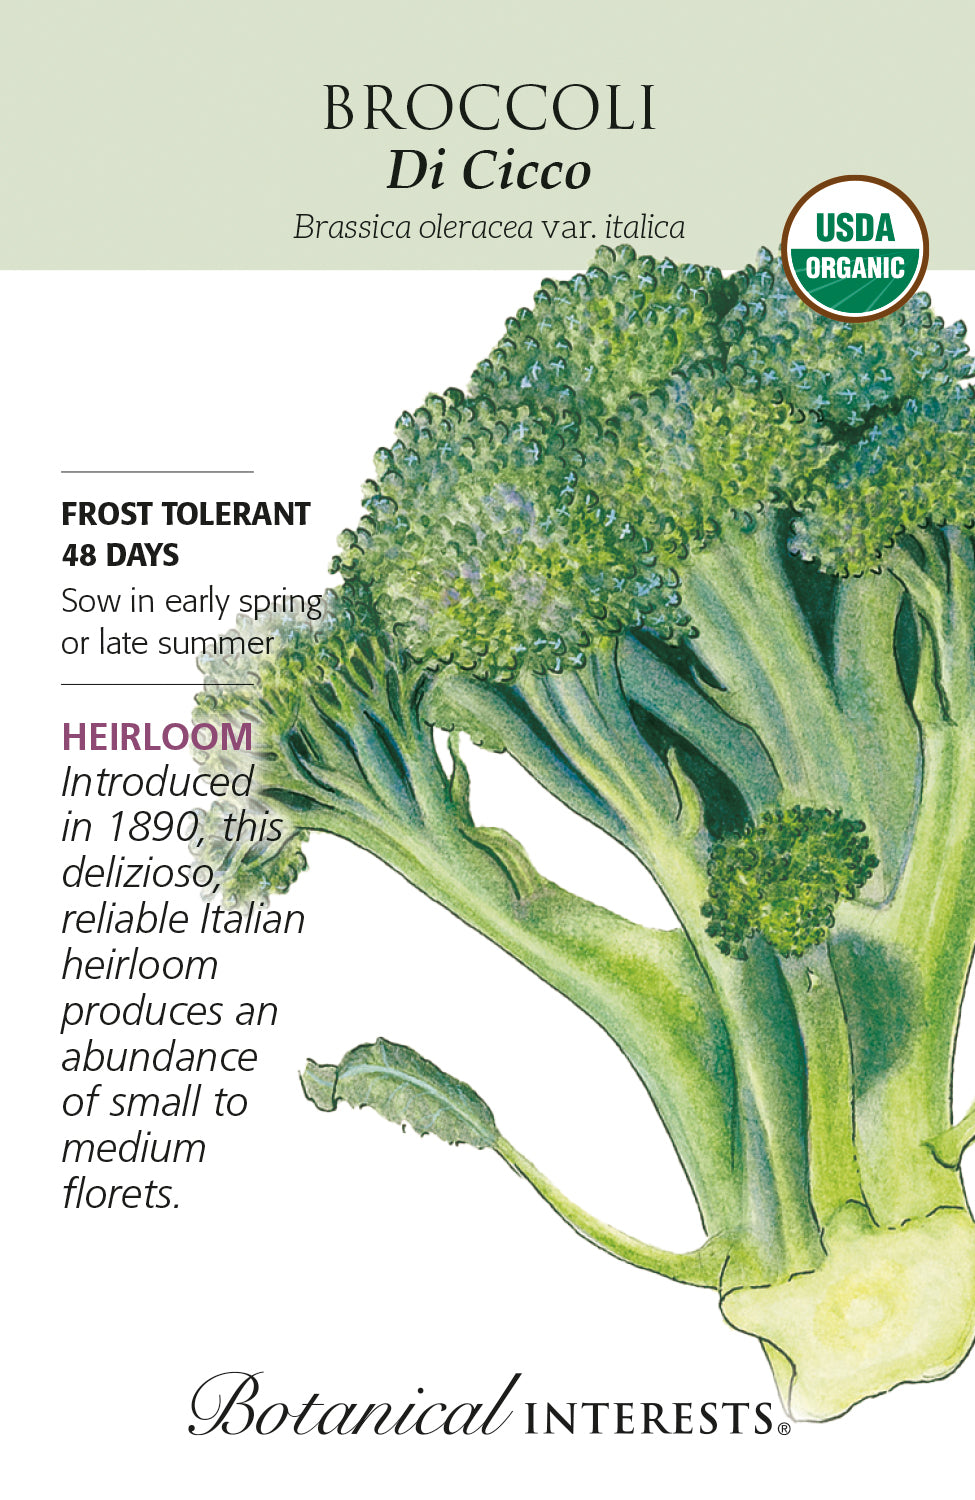 Broccoli - Di Cicco Organic